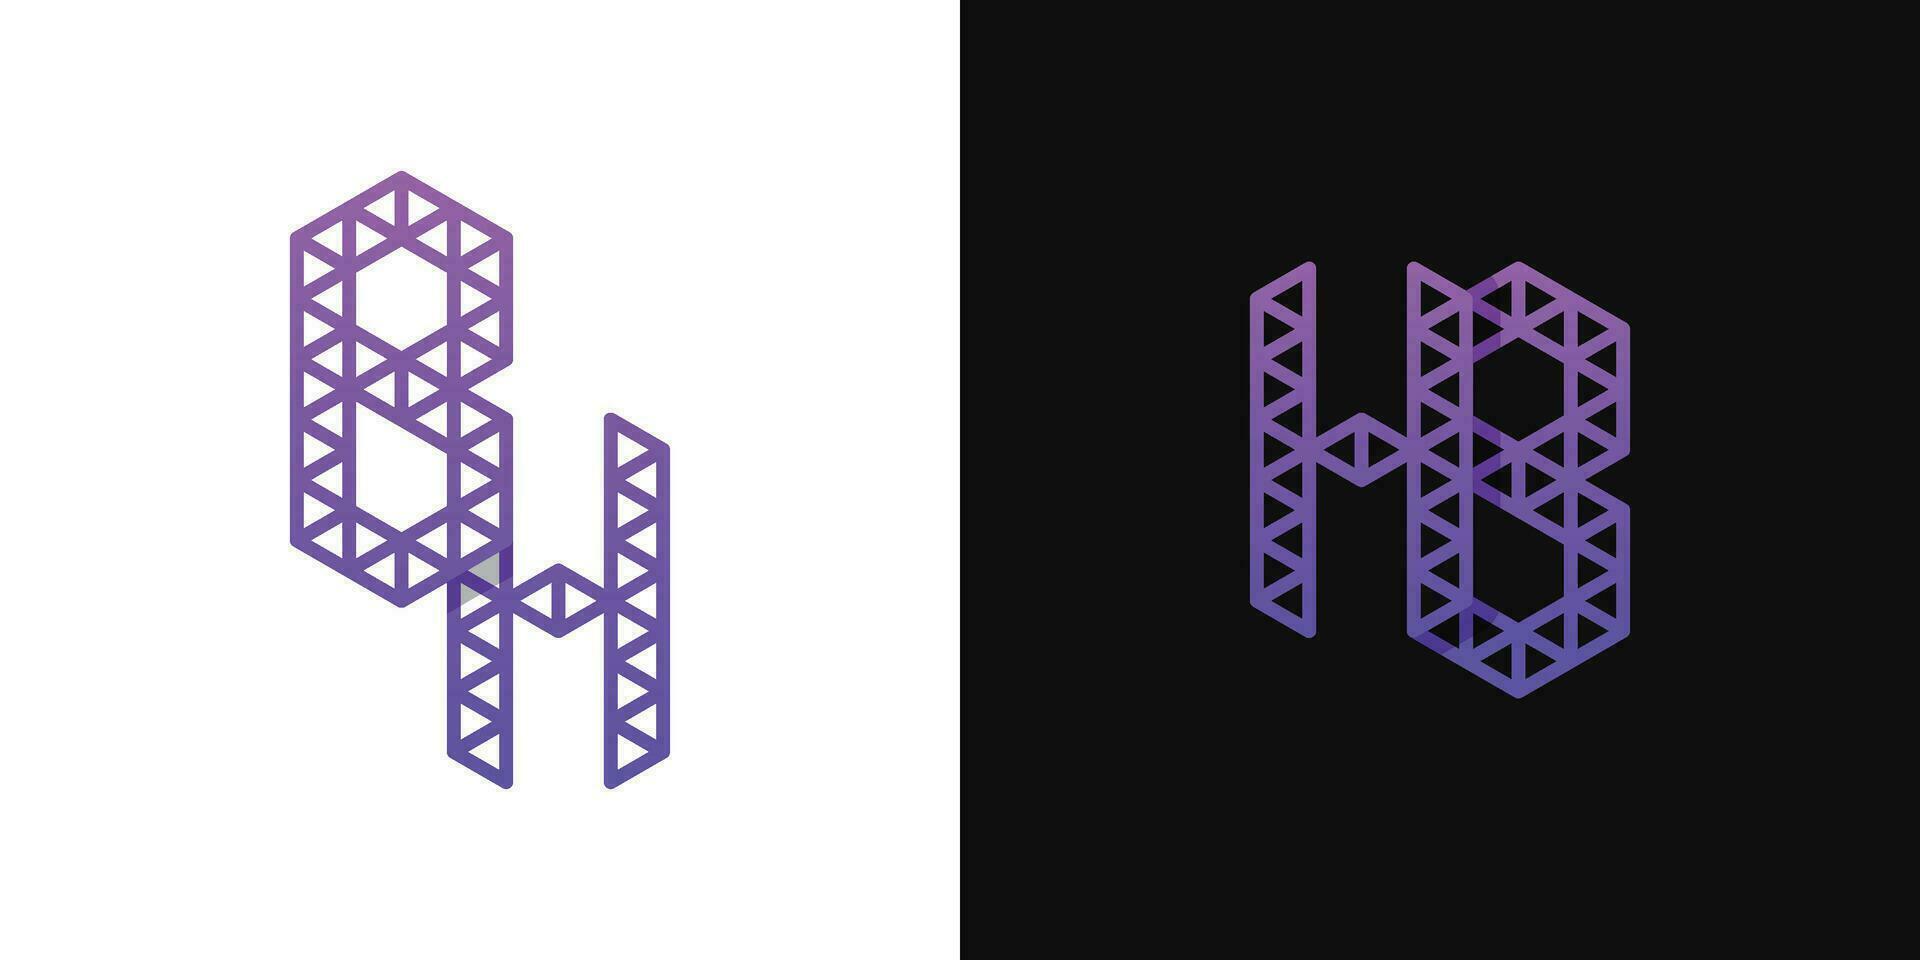 des lettres bh et hb polygone logo ensemble, adapté pour affaires en relation à polygone avec bh et hb initiales. vecteur